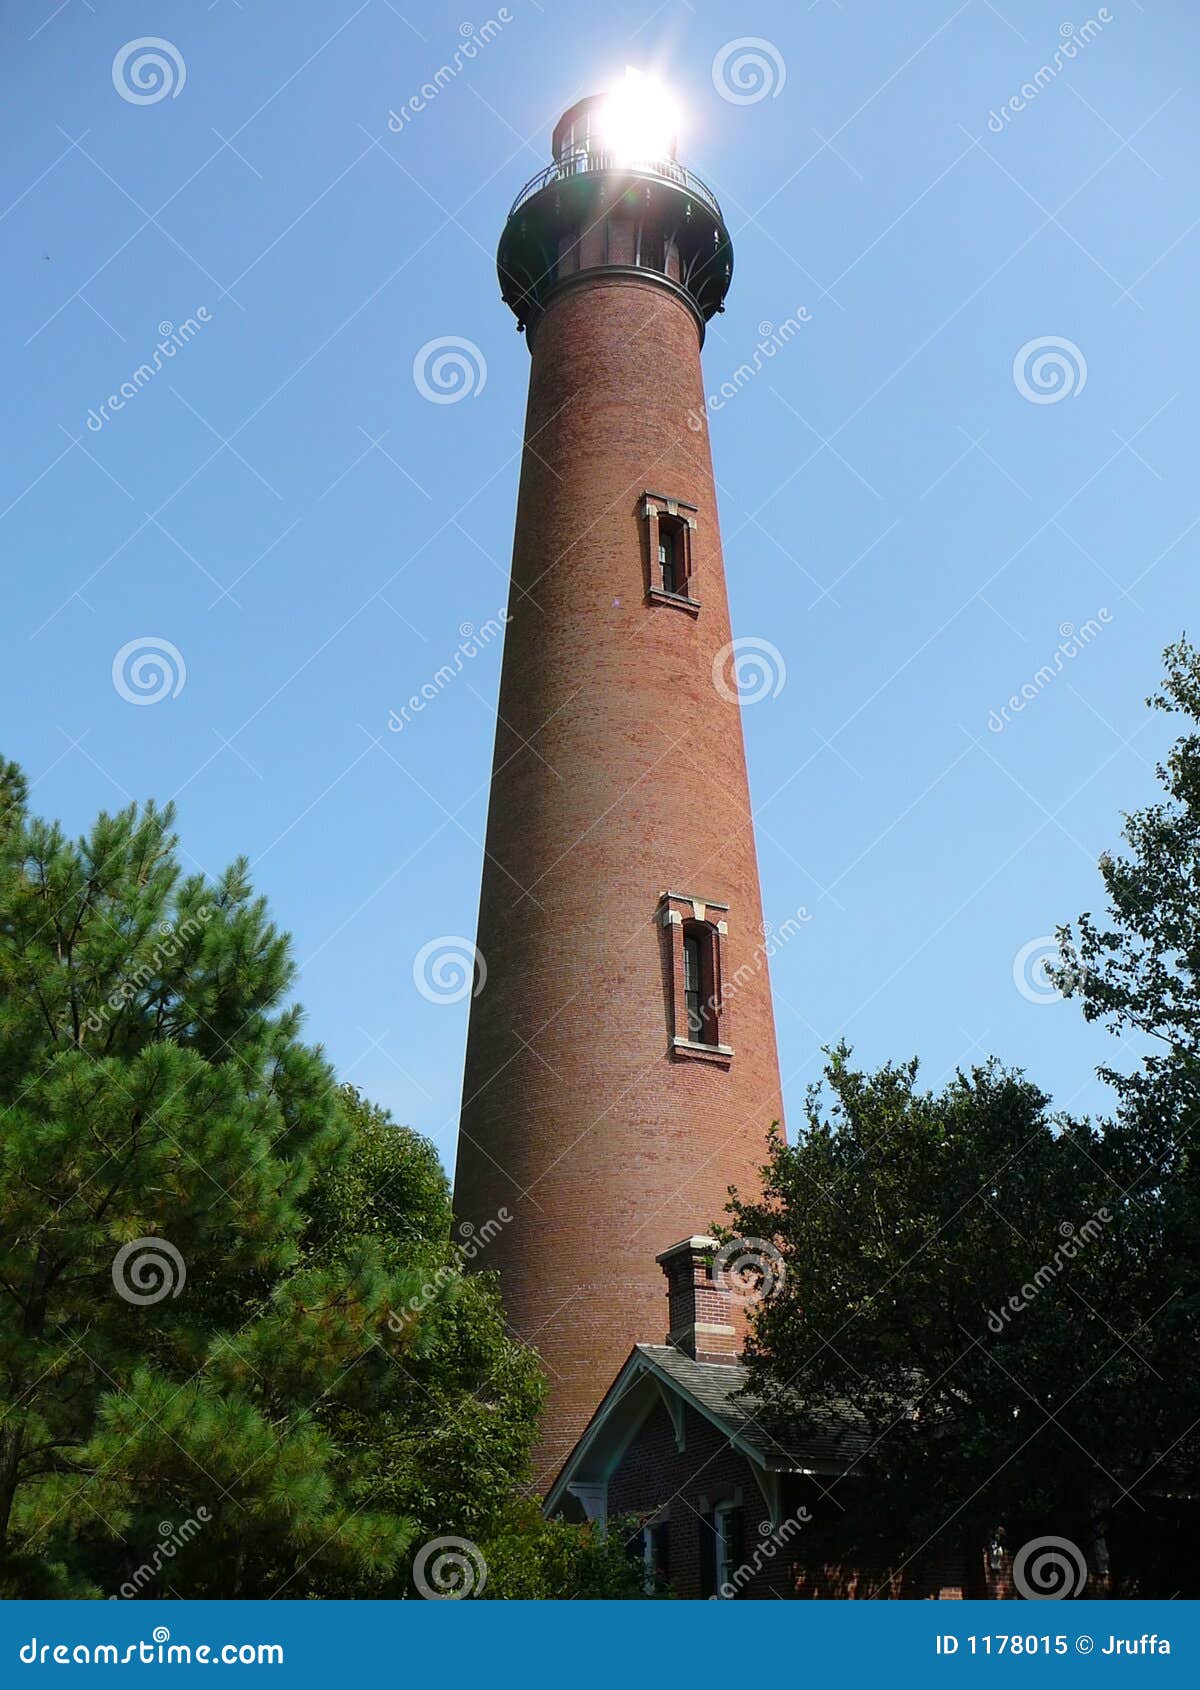 currituck beach lighthouse